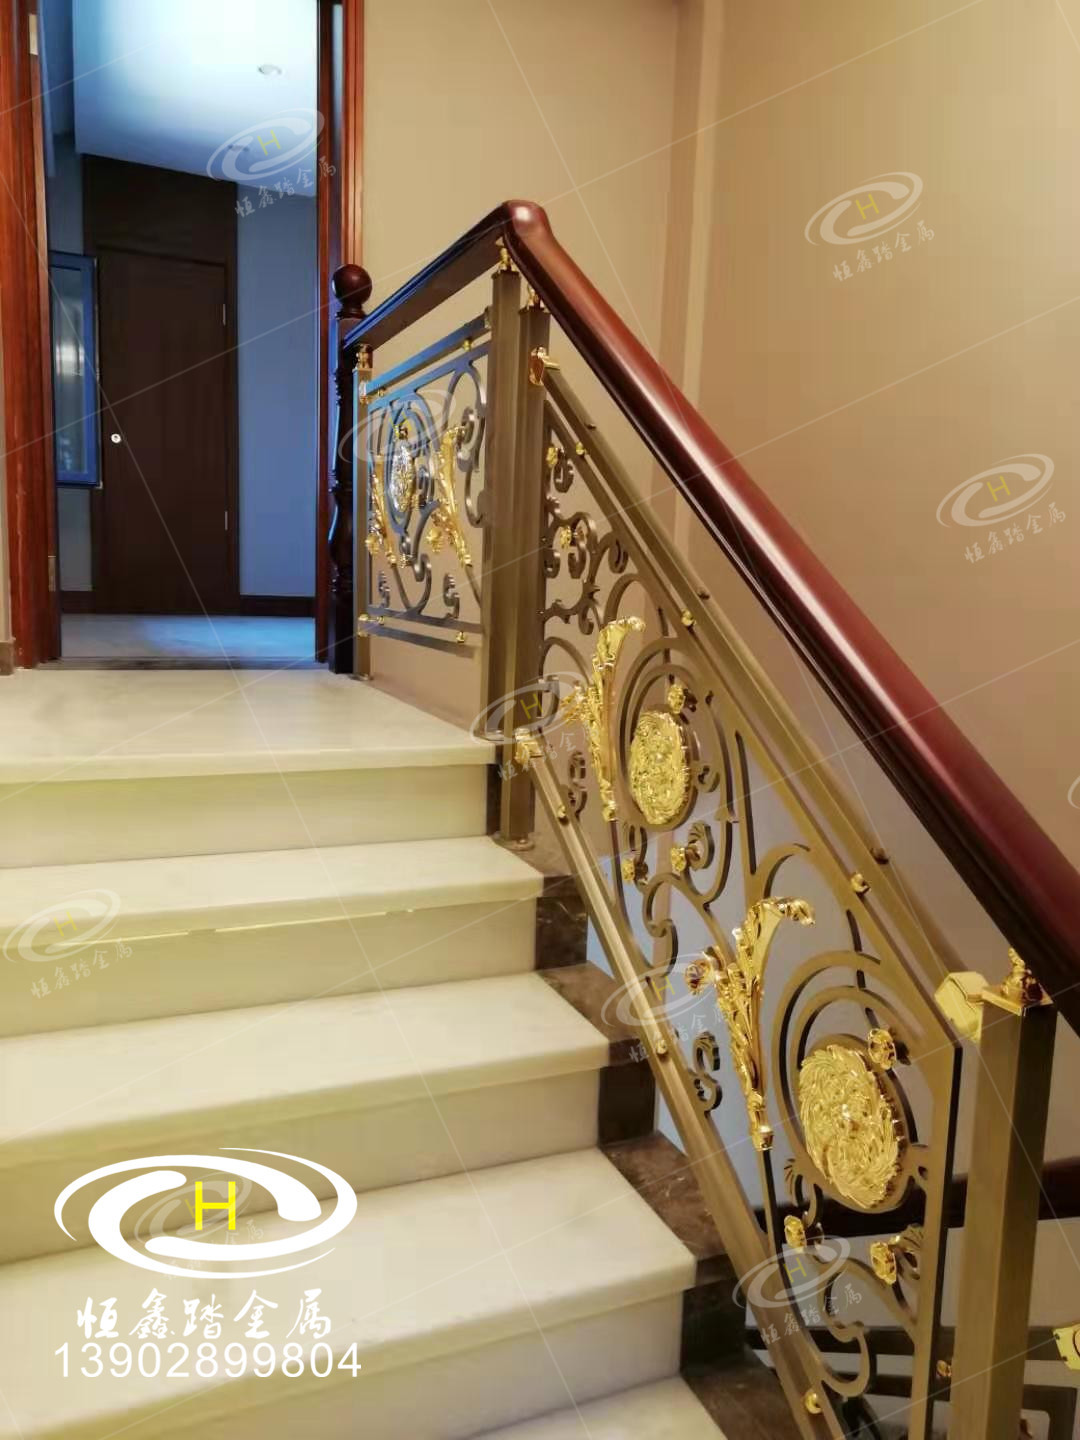 酒店旋转护栏 楼梯护栏生产厂家 广东佛山专业楼梯护栏安装测量一条龙服务图片